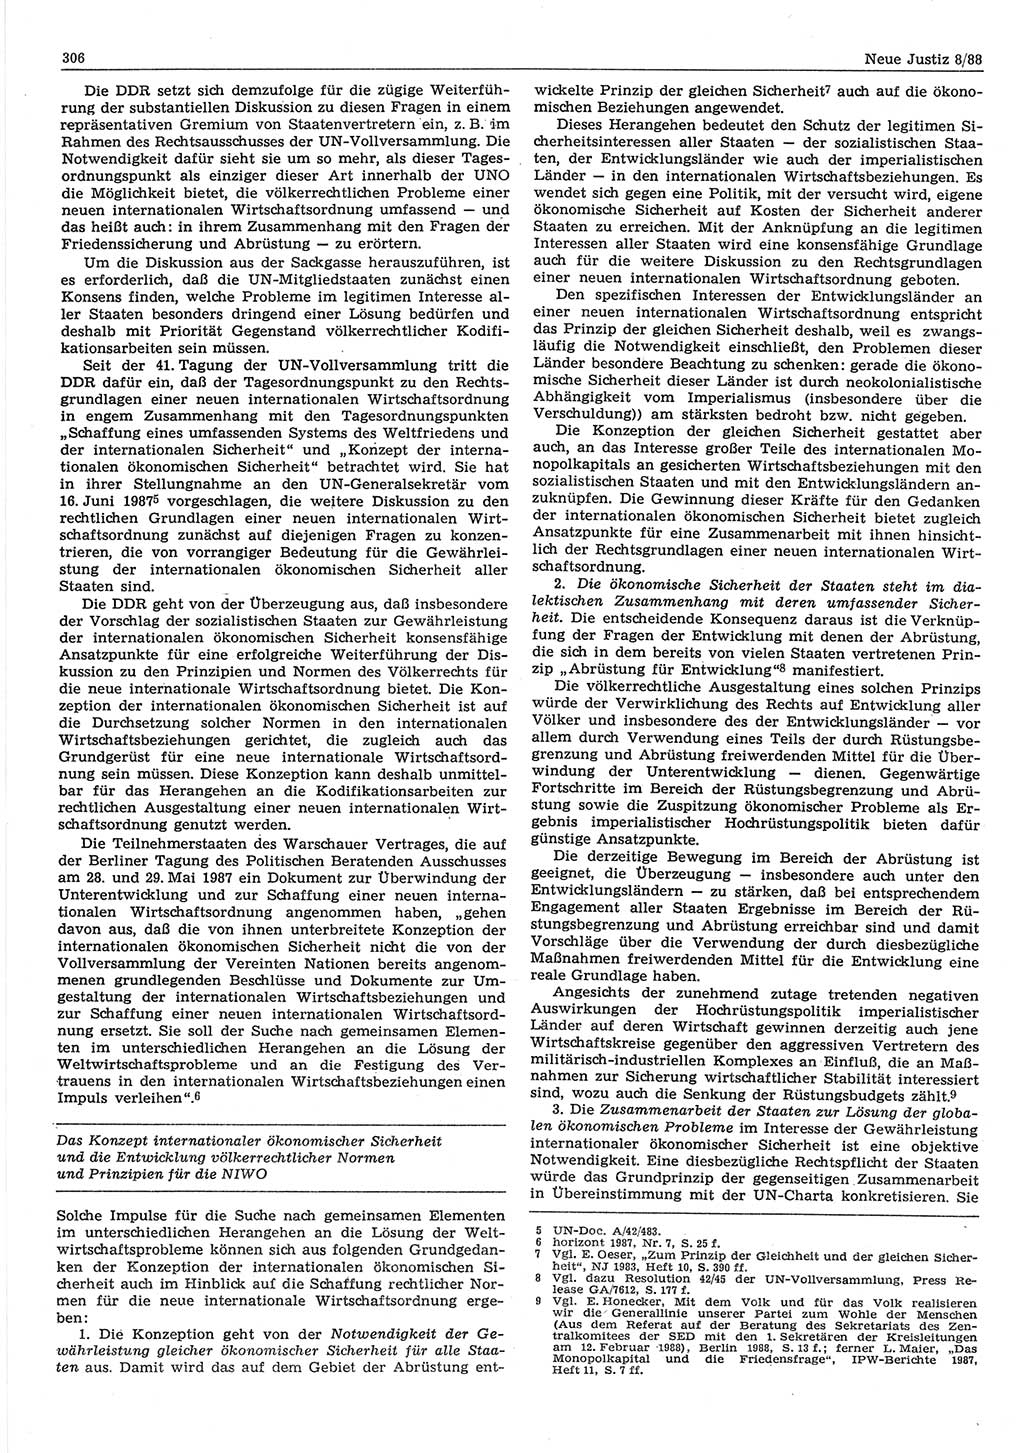 Neue Justiz (NJ), Zeitschrift für sozialistisches Recht und Gesetzlichkeit [Deutsche Demokratische Republik (DDR)], 42. Jahrgang 1988, Seite 306 (NJ DDR 1988, S. 306)